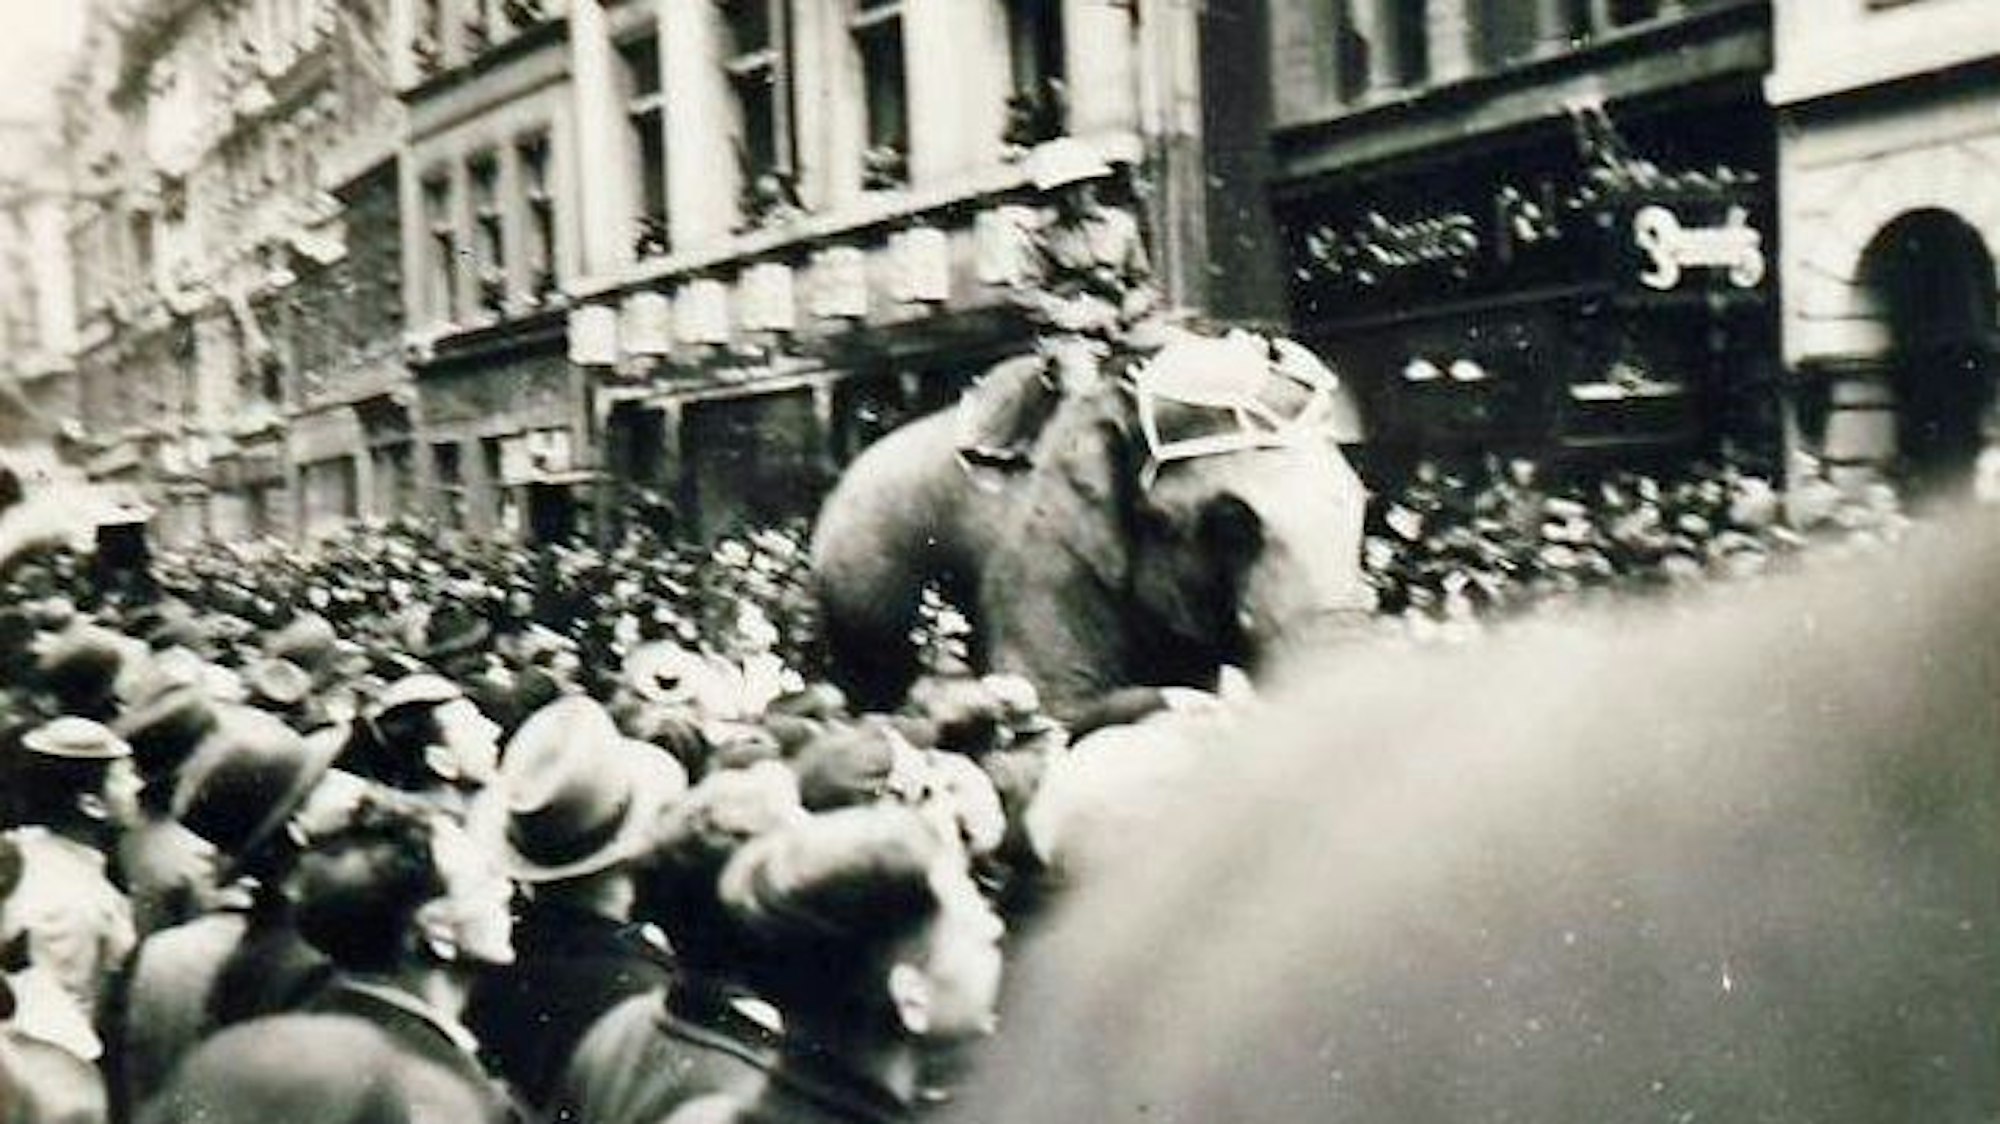 Eine Schwarz-Weiß-Fotografie zeigt den Rosenmontagsumzug, inmitten der Menge reitet ein Mann auf einem Elefanten.